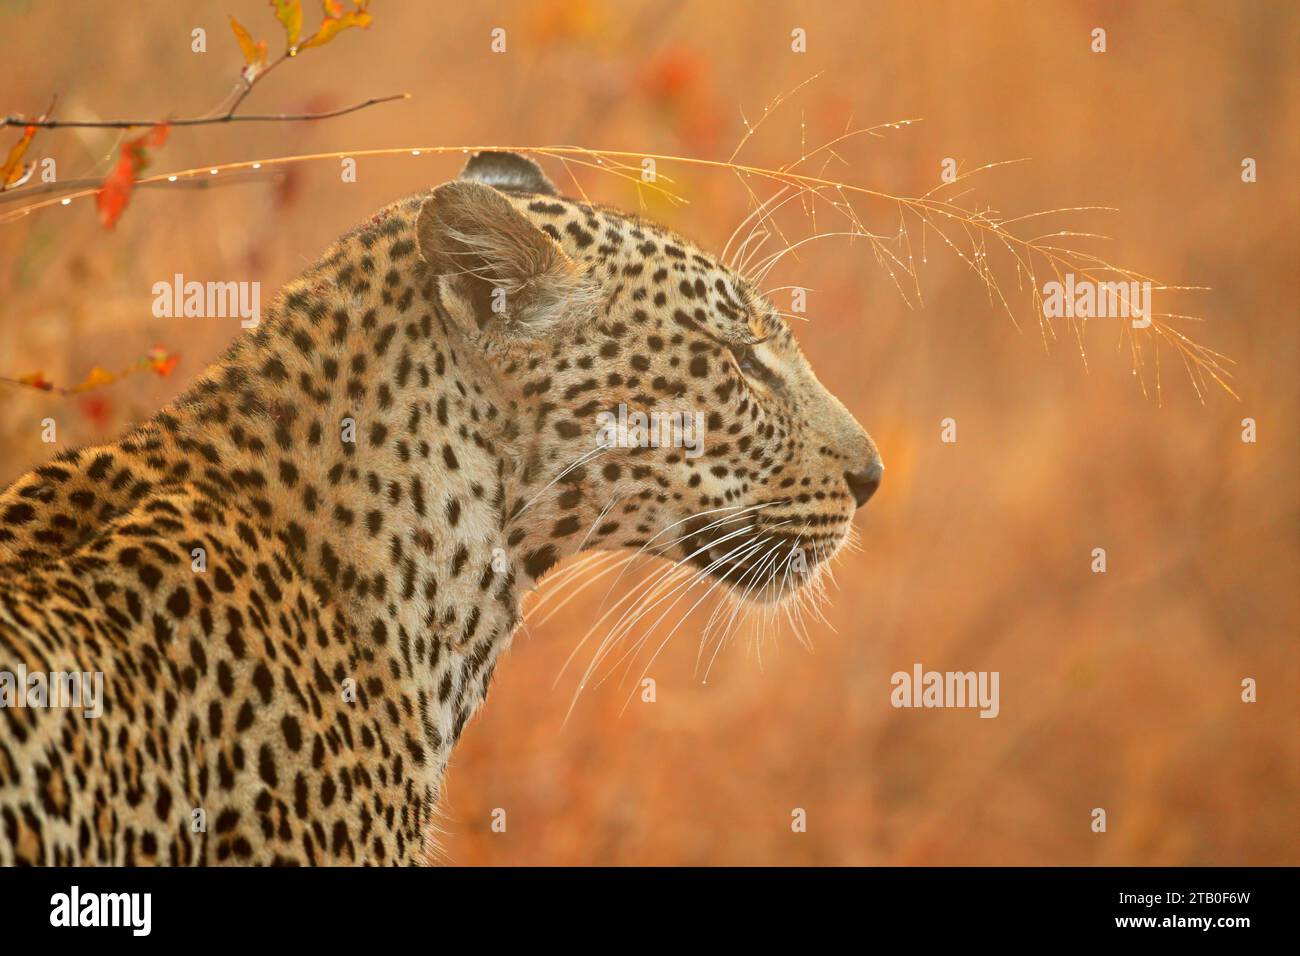 Portrait d'un léopard (Panthera pardus) dans un habitat naturel, Afrique du Sud Banque D'Images